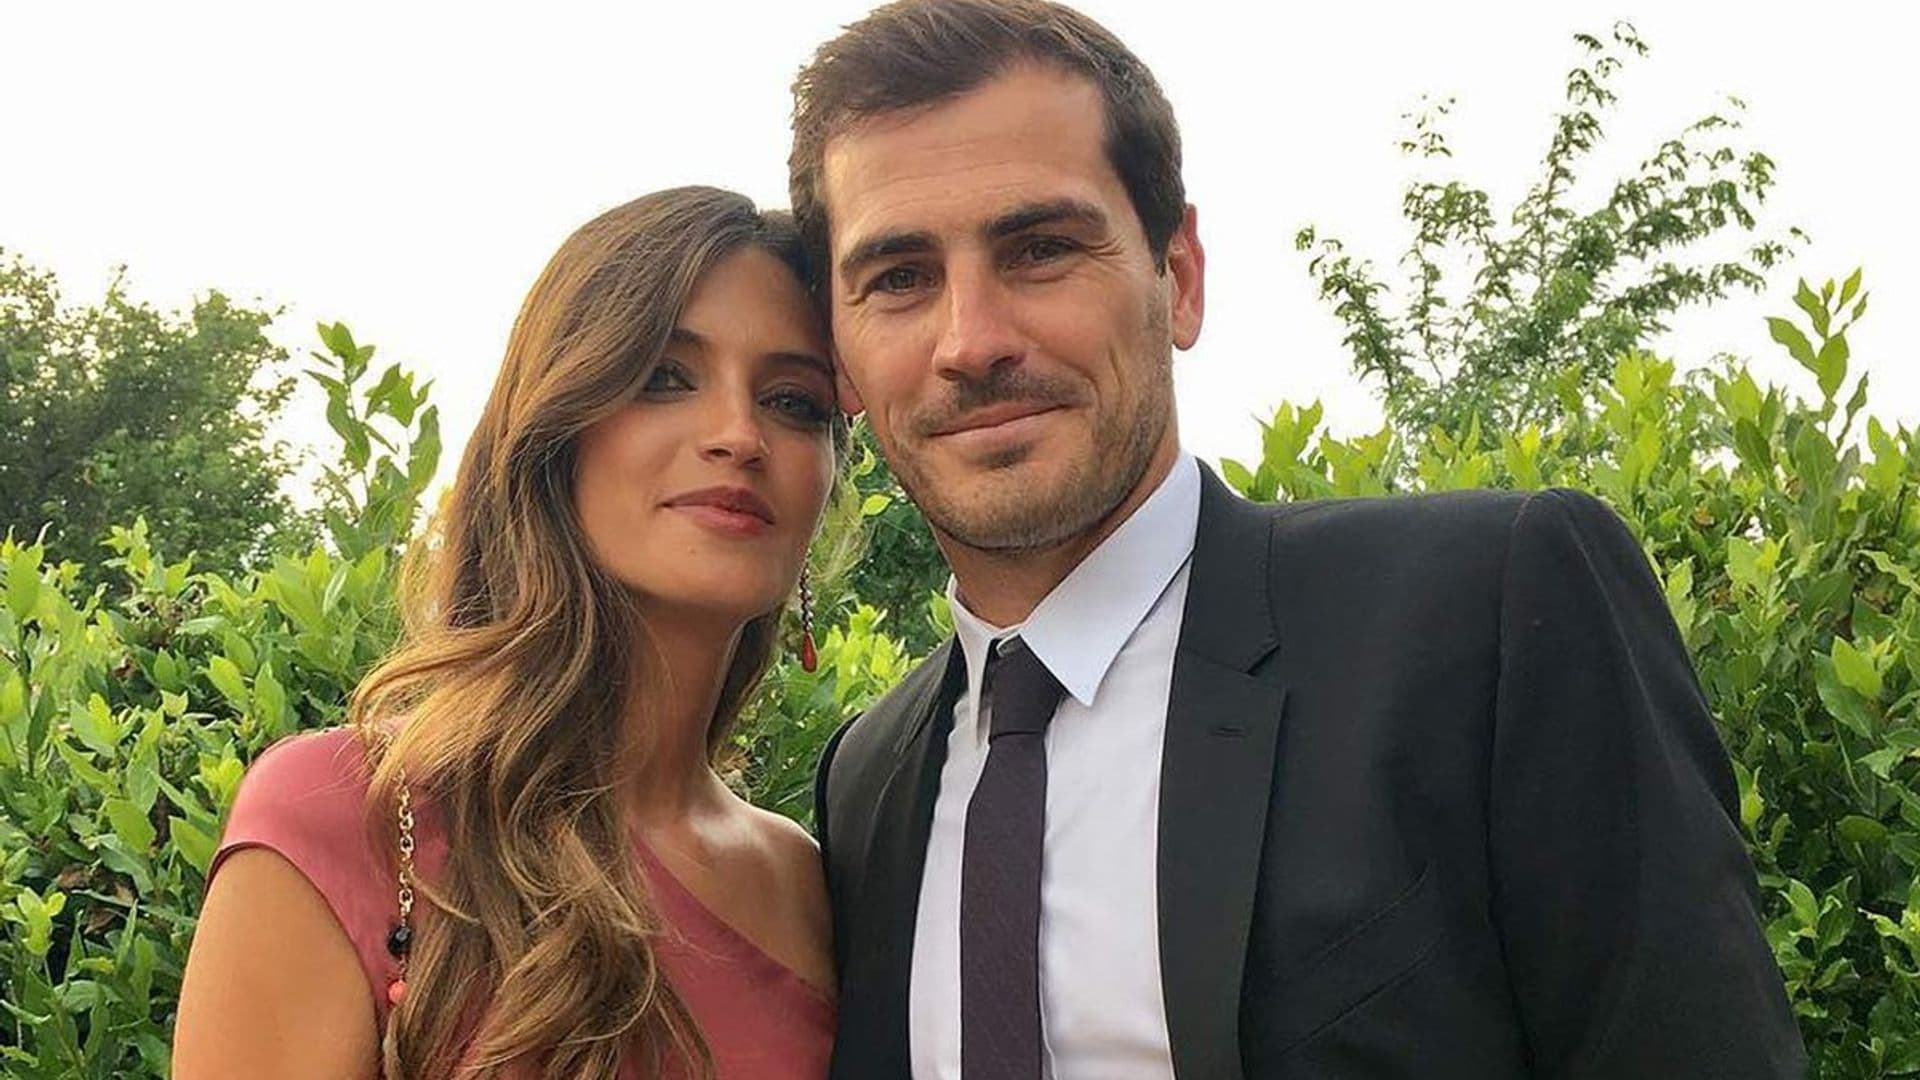 Sara Carbonero e Iker Casillas: Las imágenes que demuestran cuál es su verdadera relación